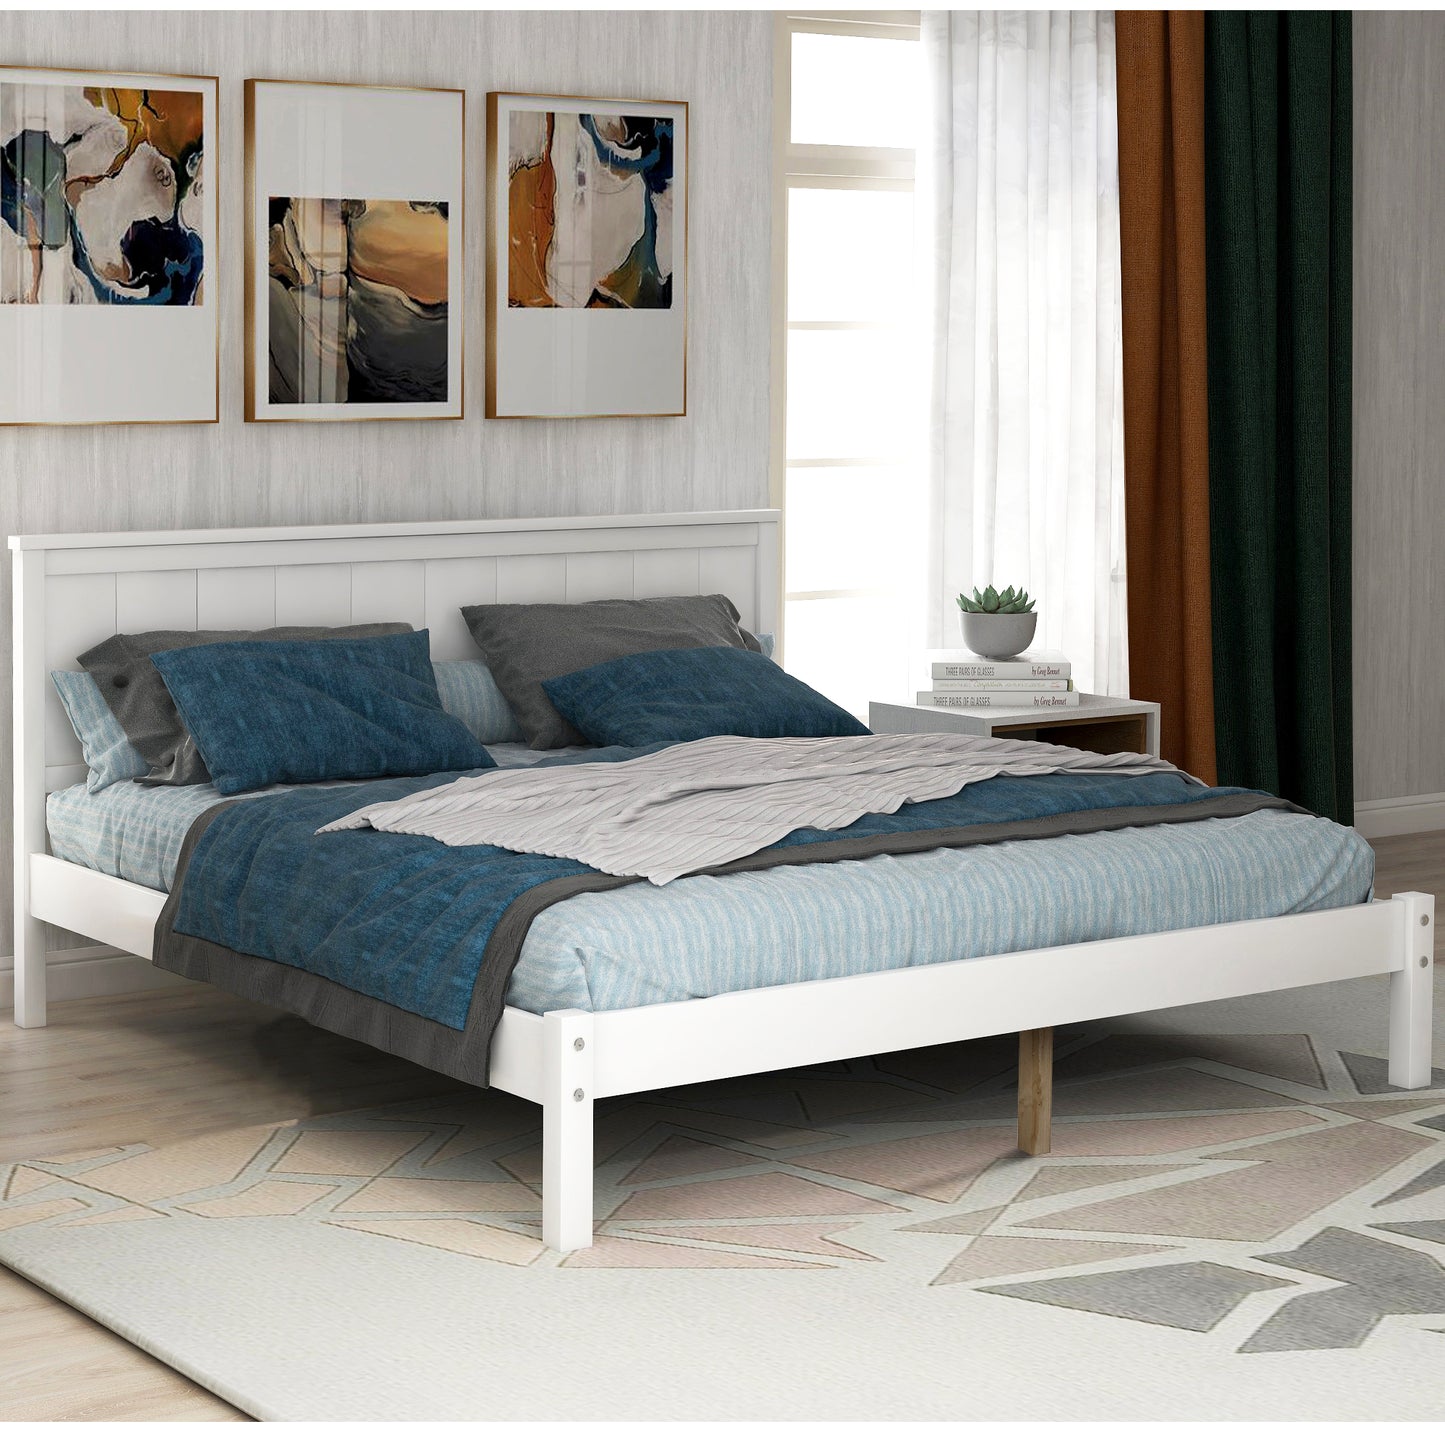 Queen Size Bed frame, Wooden Bed Frame with Headboard, Queen Bed Frame for Kids Adults, Queen Size Bed Frame for Bedroom, Espresso, LJ2450